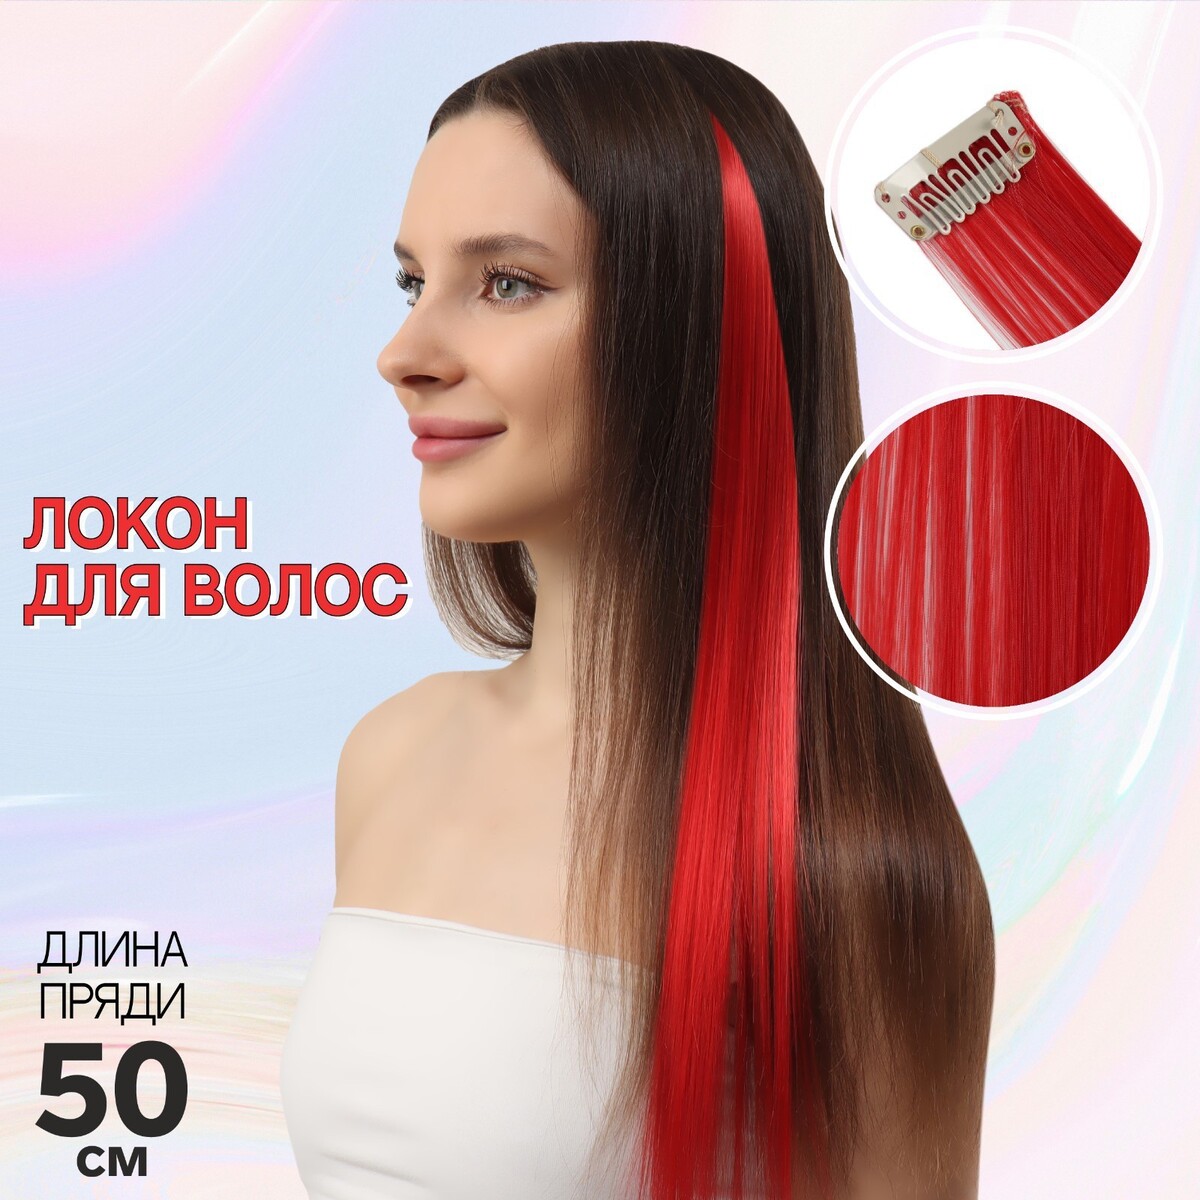 Локон накладной, прямой волос, на заколке, 50 см, 5 гр, цвет красный локон накладной бантик прямой волос на заколке 32 см микс